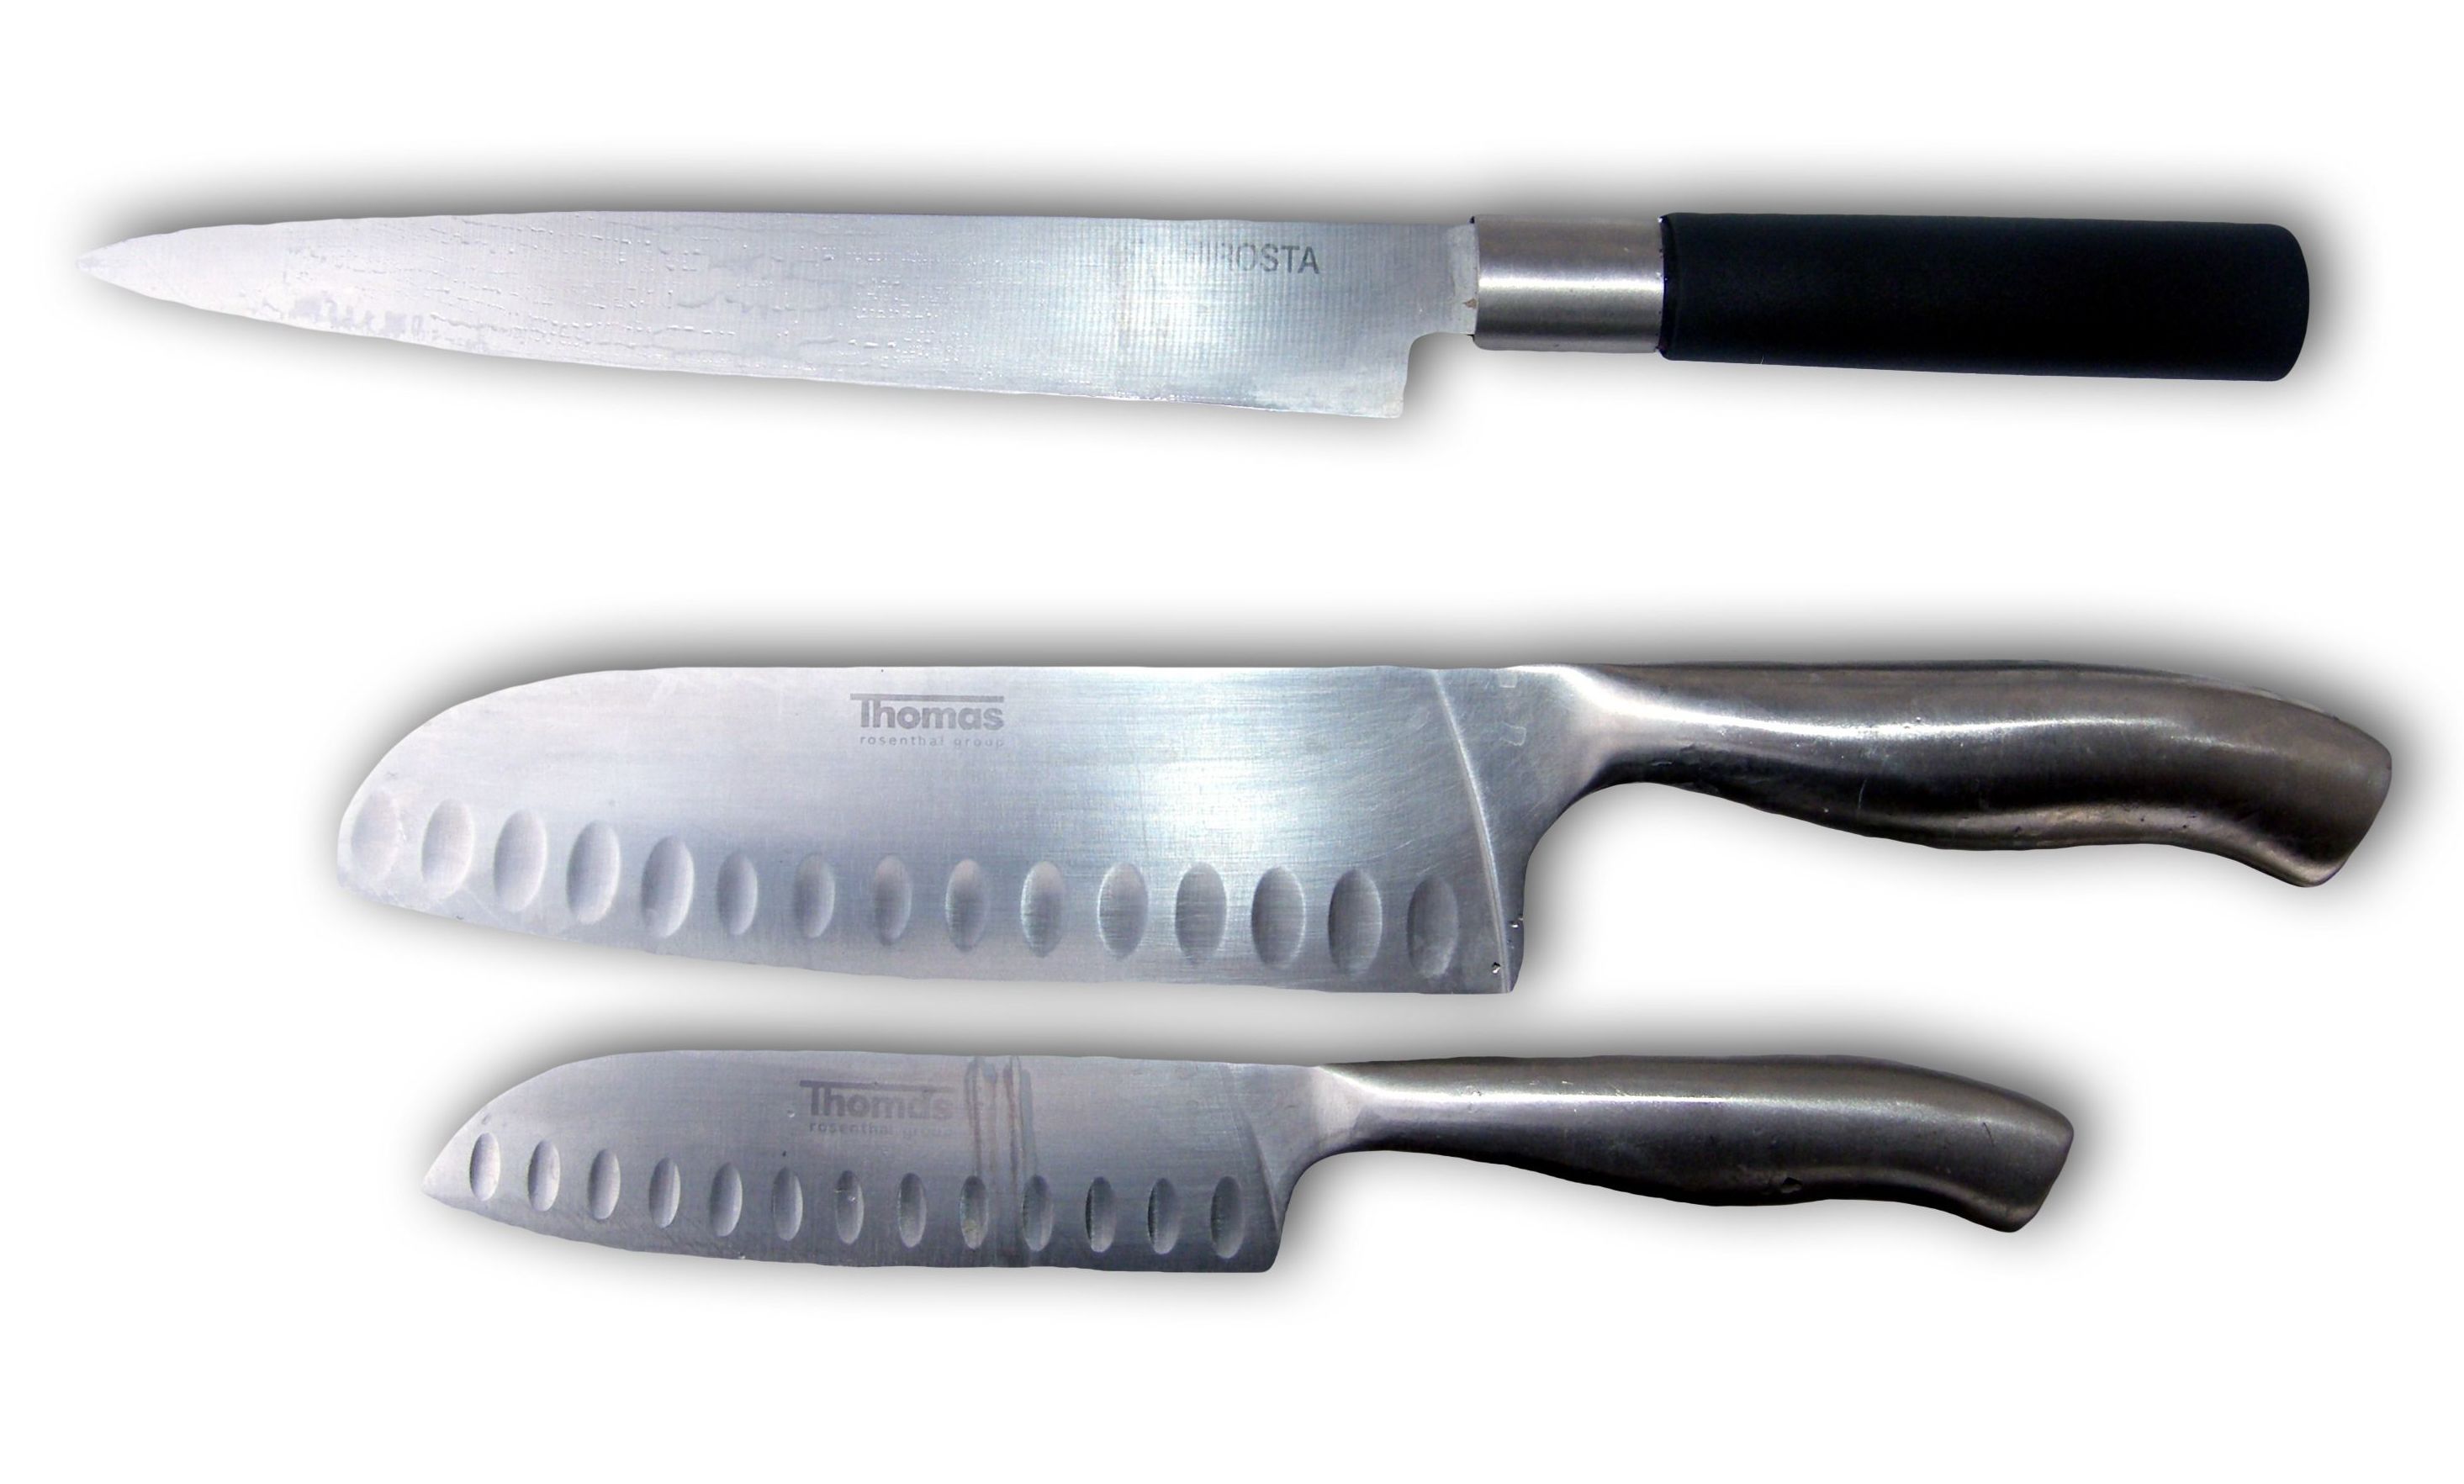 Tienda de cuchillos